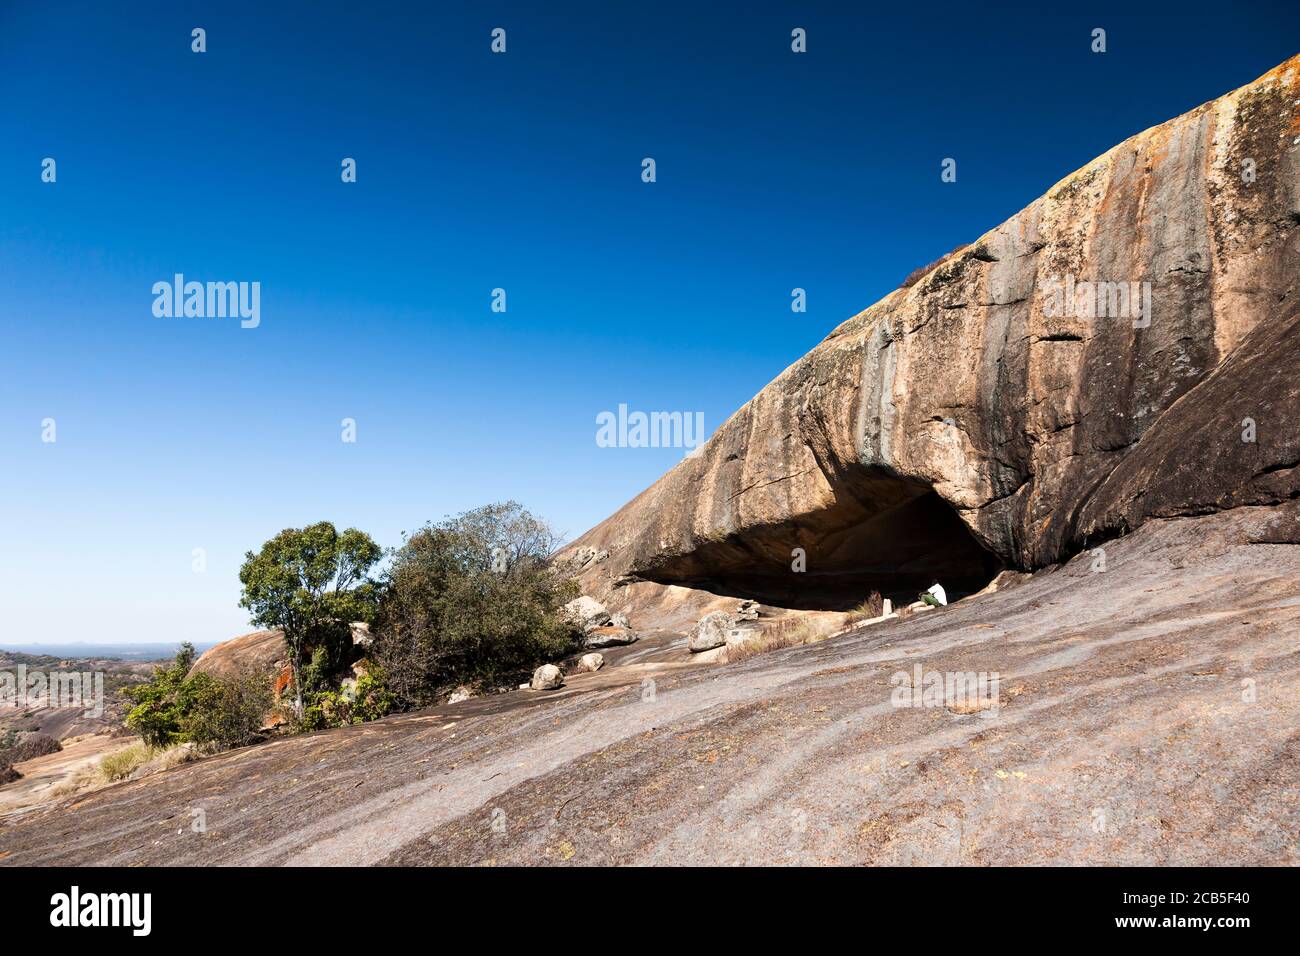 Matobo hills, Entrance of 'Silozwane cave' rock painting site, Matobo National Park, suburbs of Bulawayo, Matabeleland South, Zimbabwe, Africa Stock Photo